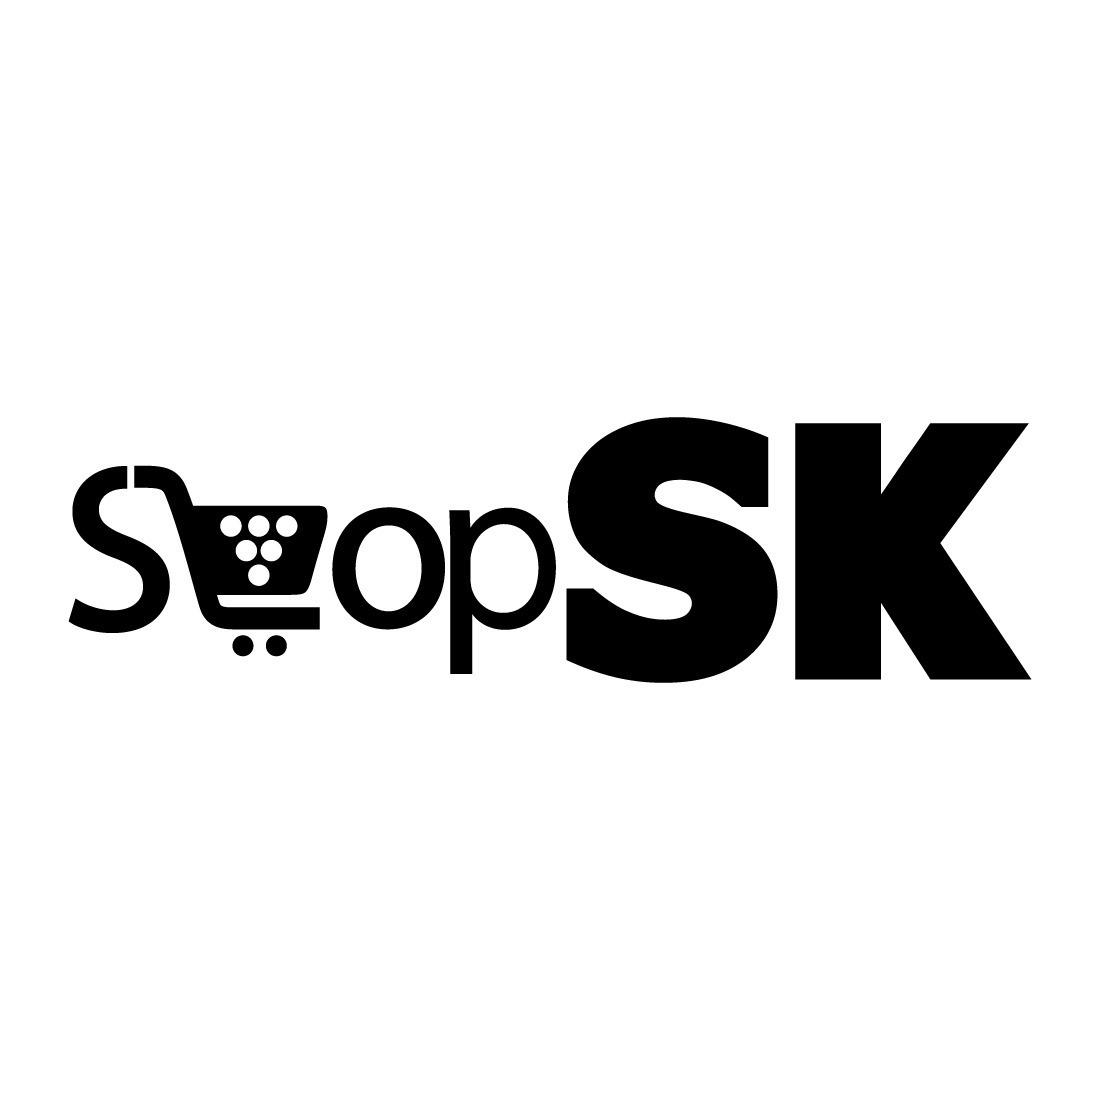 ShopSK